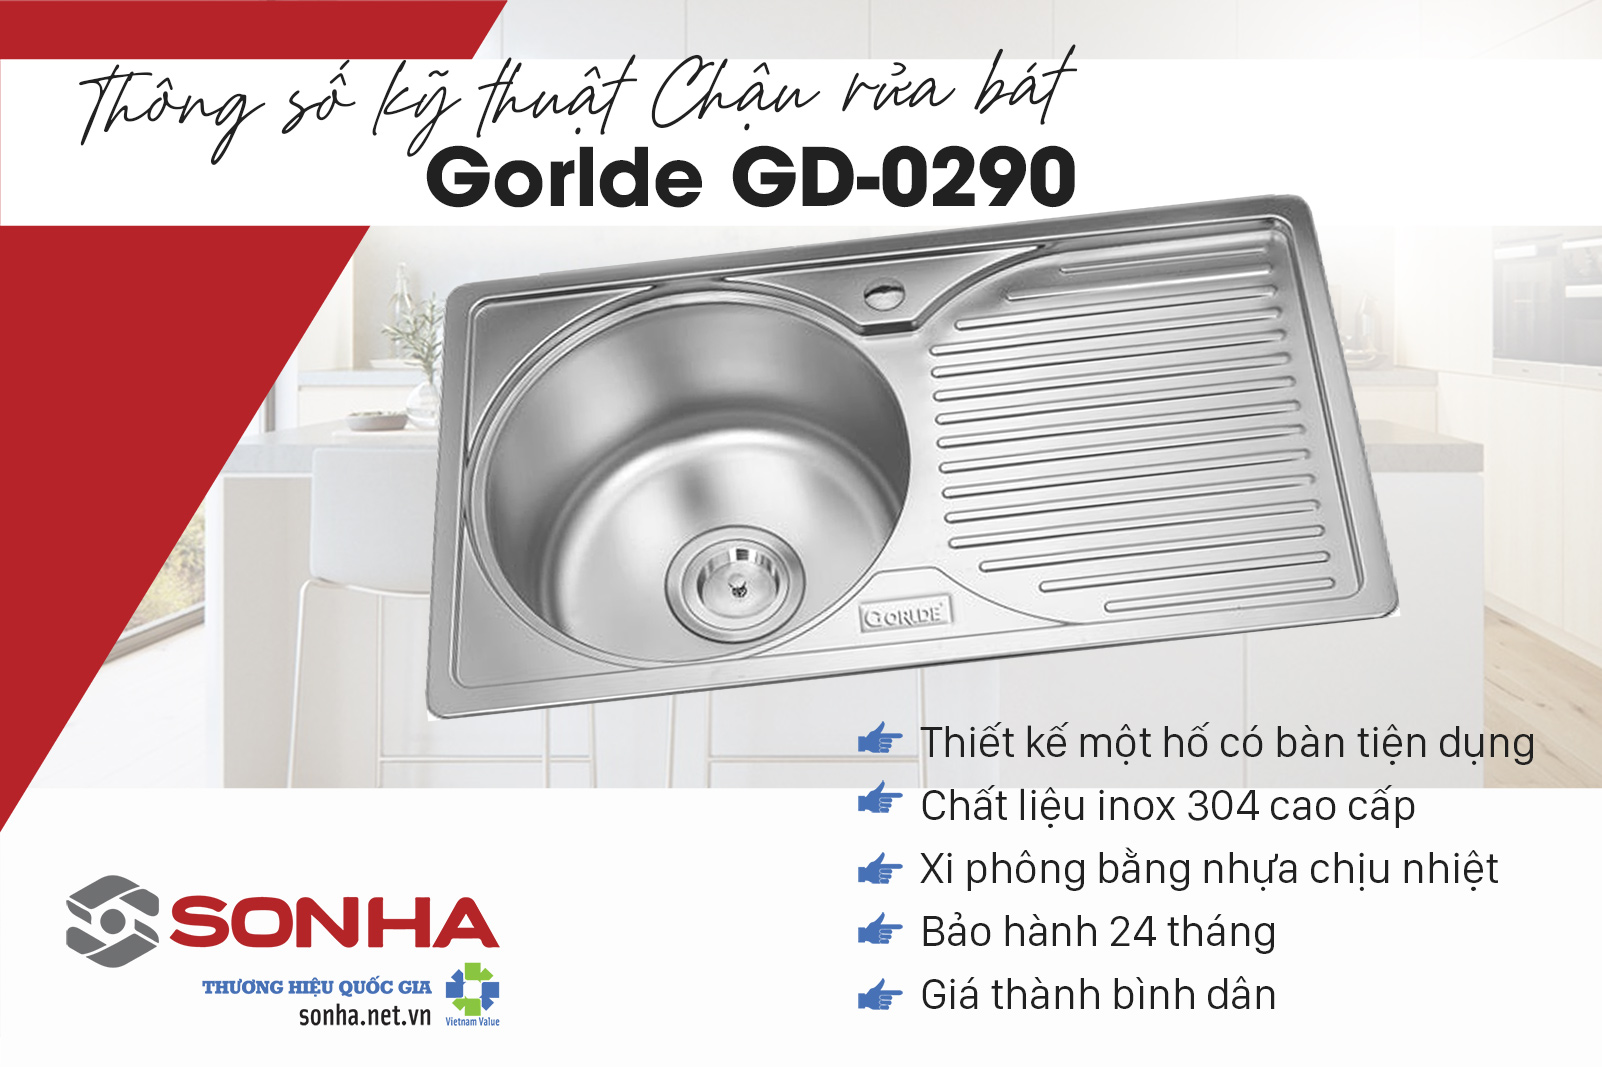 Ưu điểm của chậu rửa bát Gorlde GD-0290